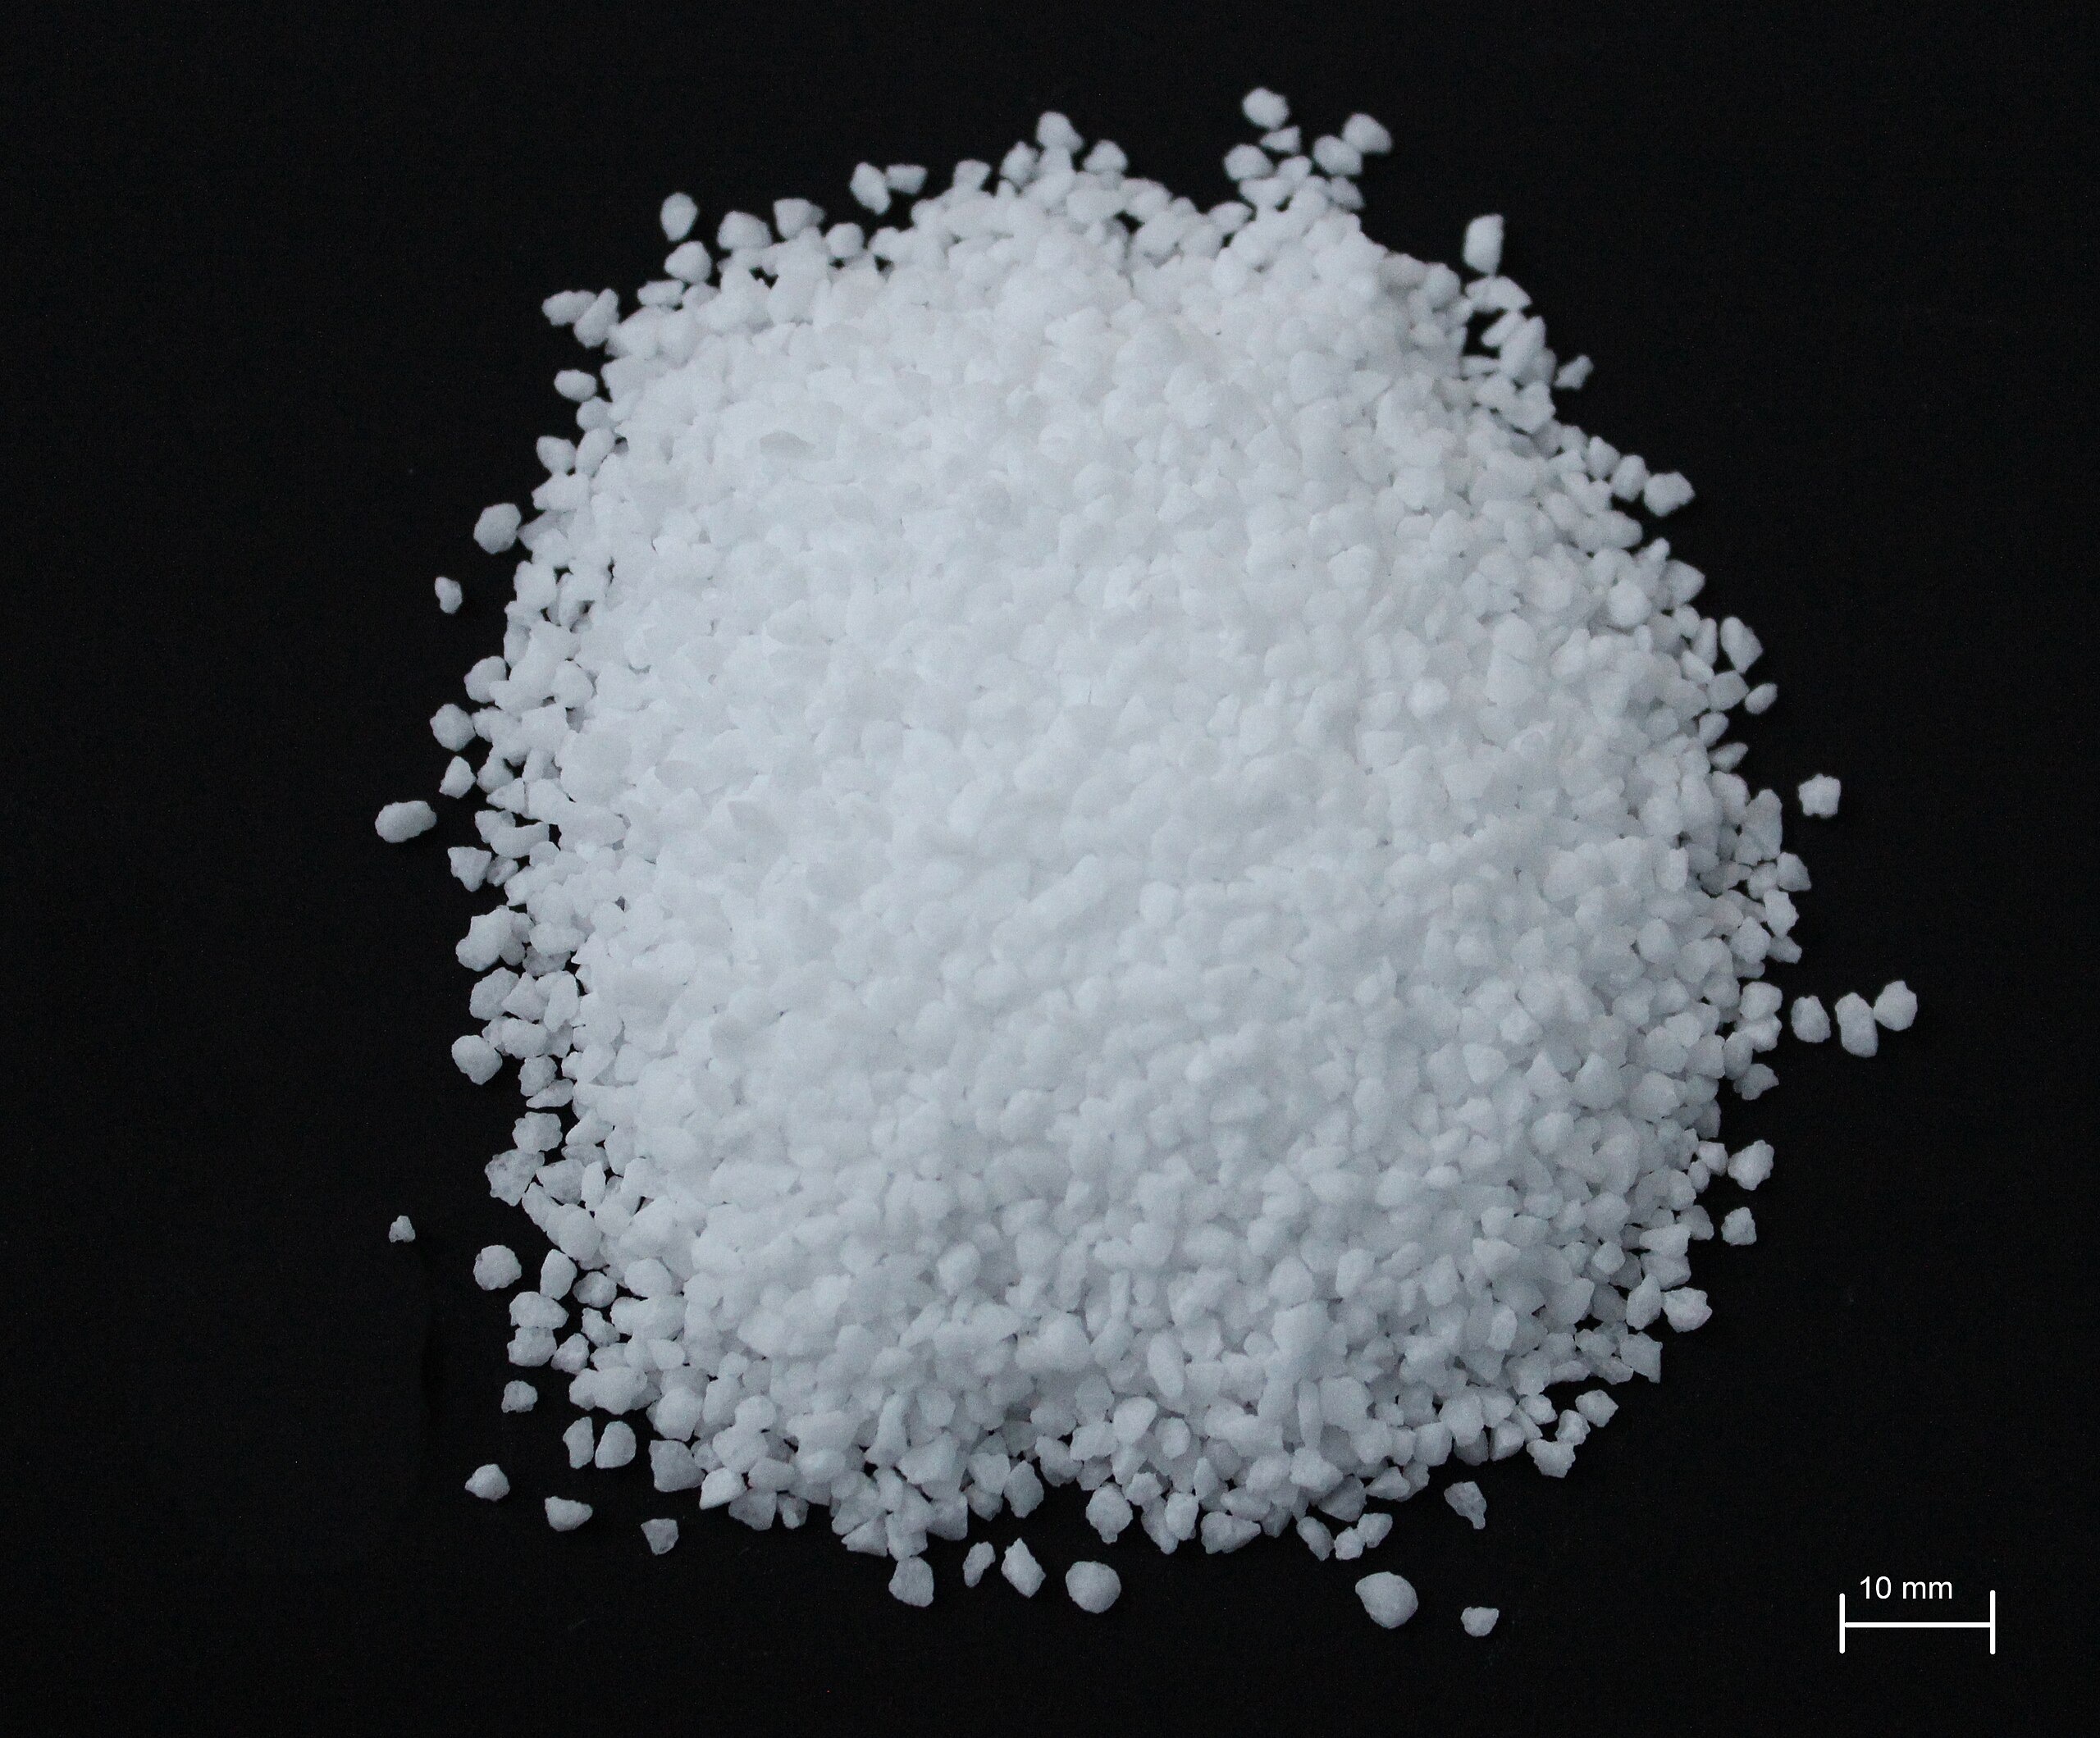 Image of sea salt